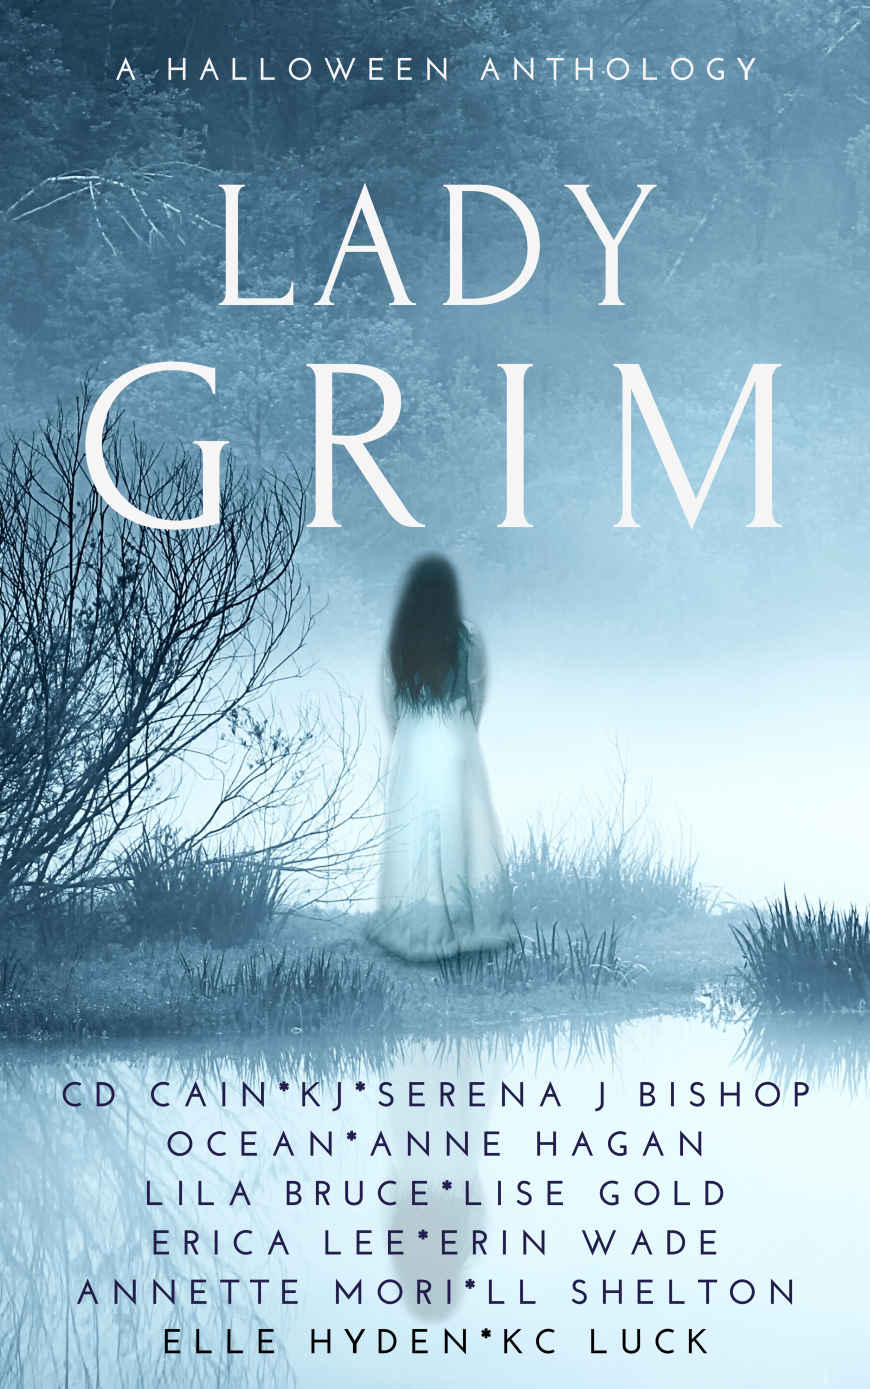 Lady Grim